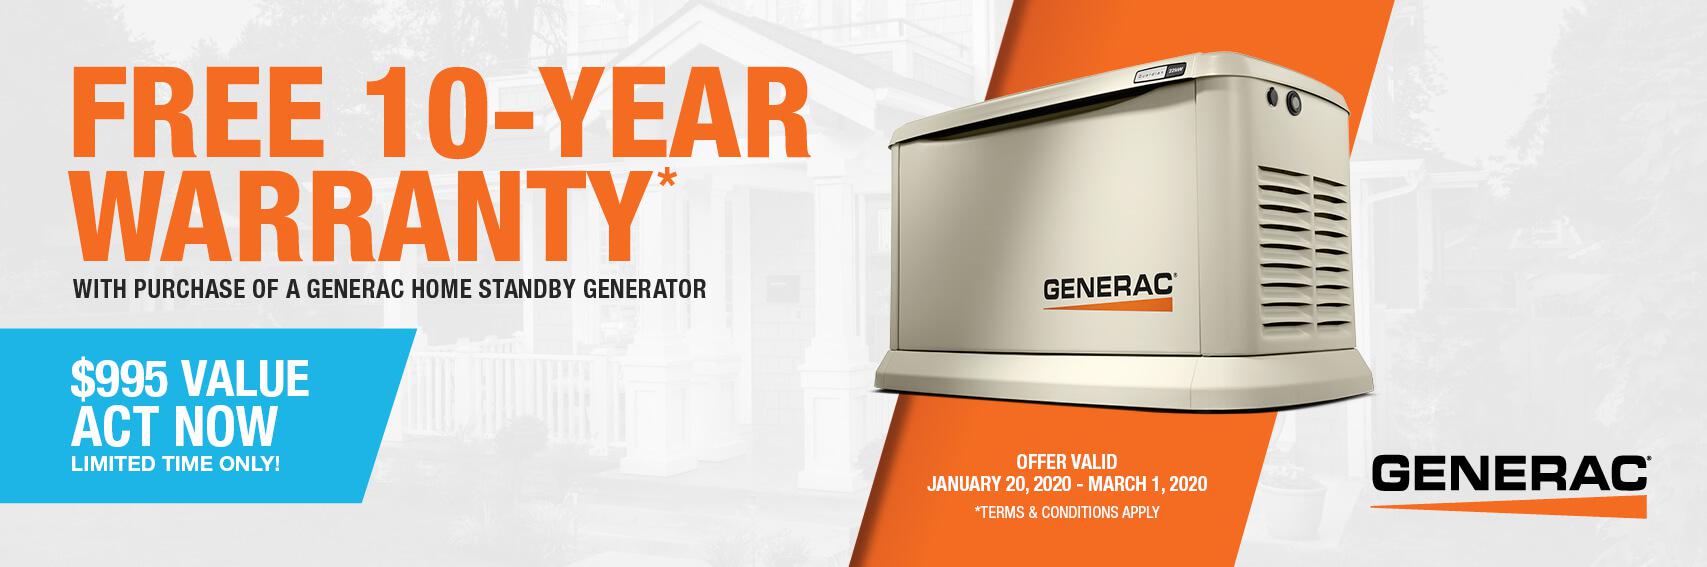 Homestandby Generator Deal | Warranty Offer | Generac Dealer | Clarkston, MI